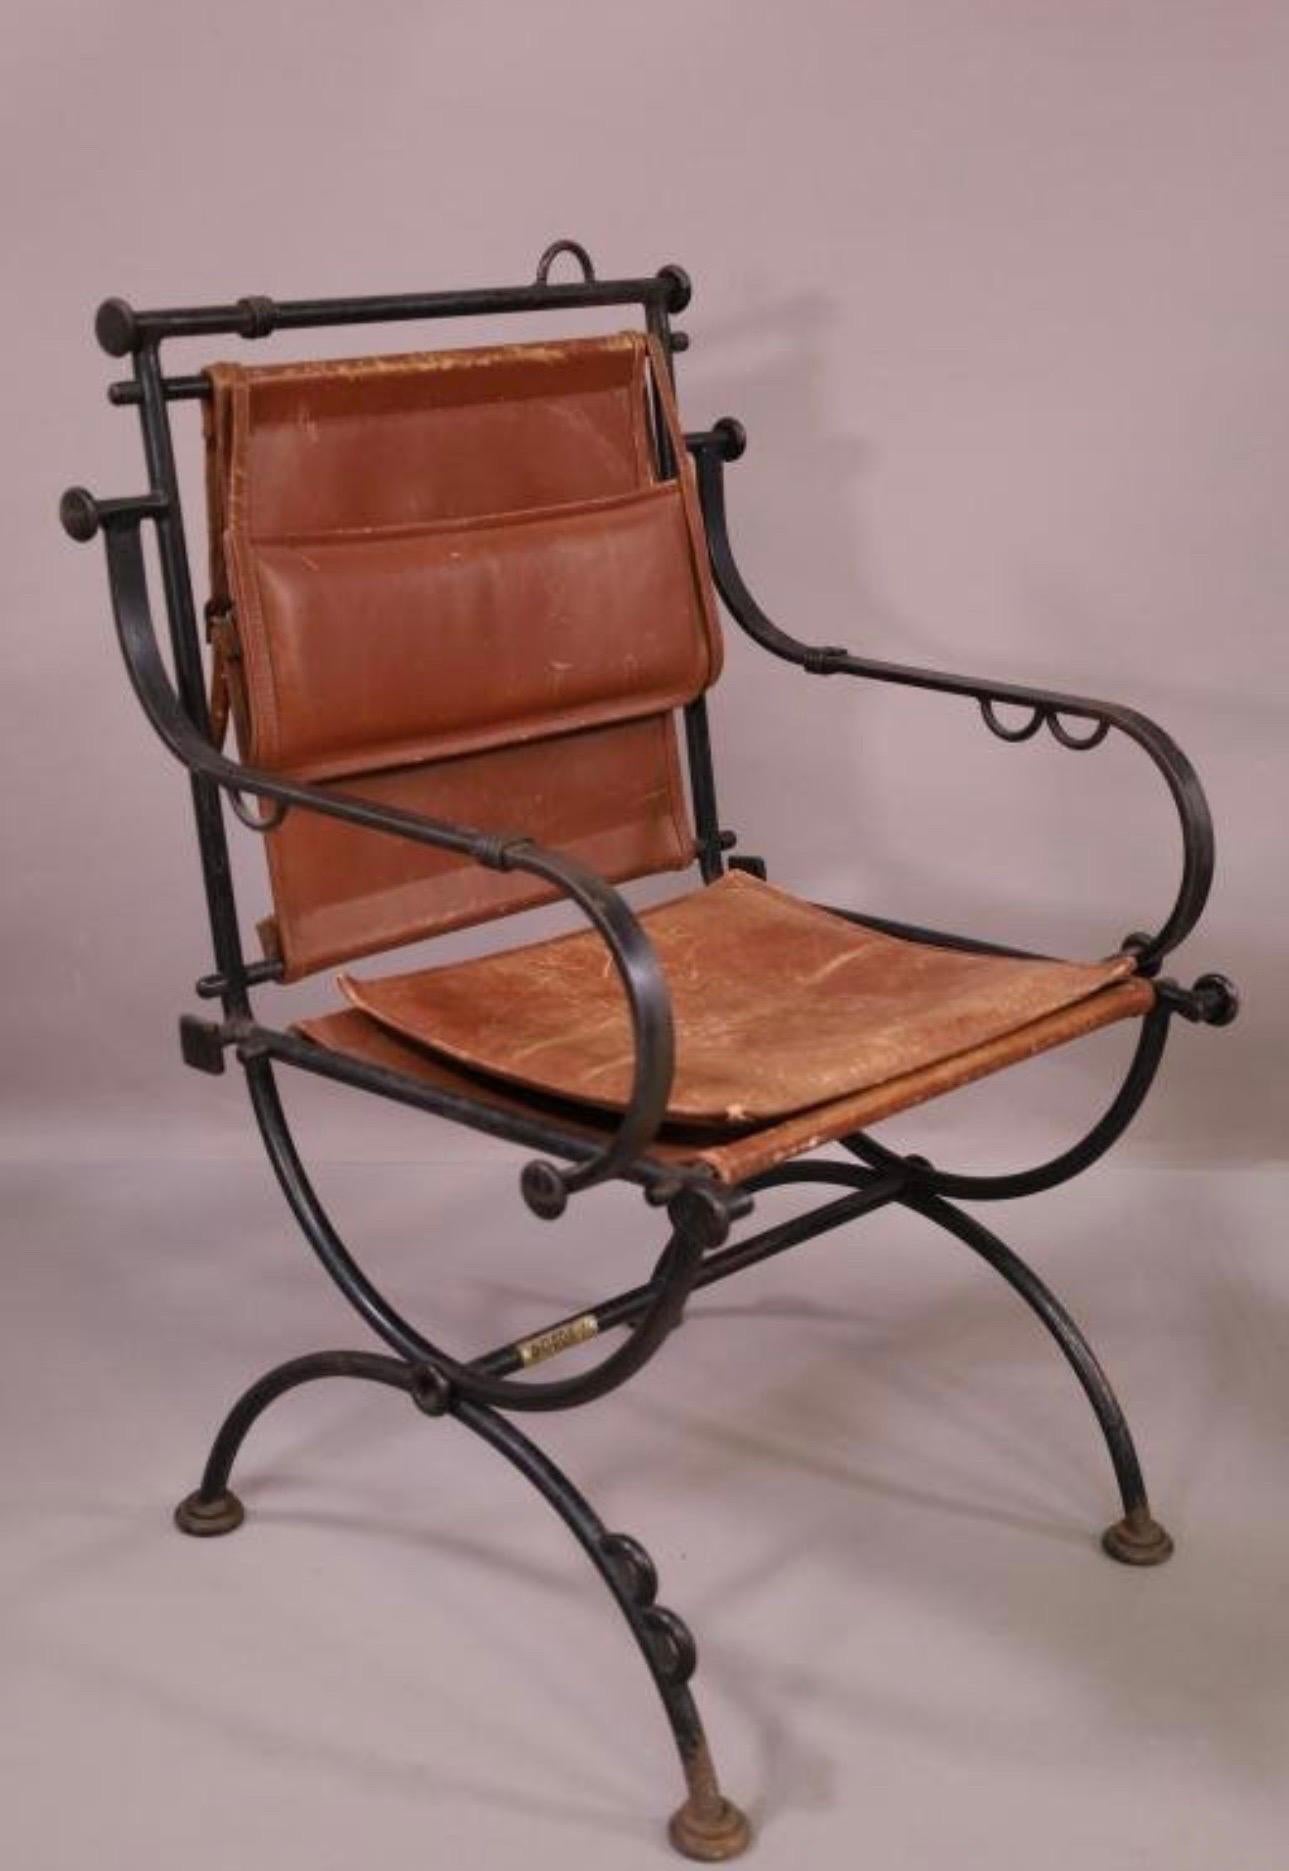 Magnifique ensemble de 6 chaises en fer et en cuir de la talentueuse designer israélienne Ilana Goor. Ces chaises sont dotées de coussins et de dossiers en cuir vieilli dans une structure en fer. Bon état vintage avec quelques petites taches de